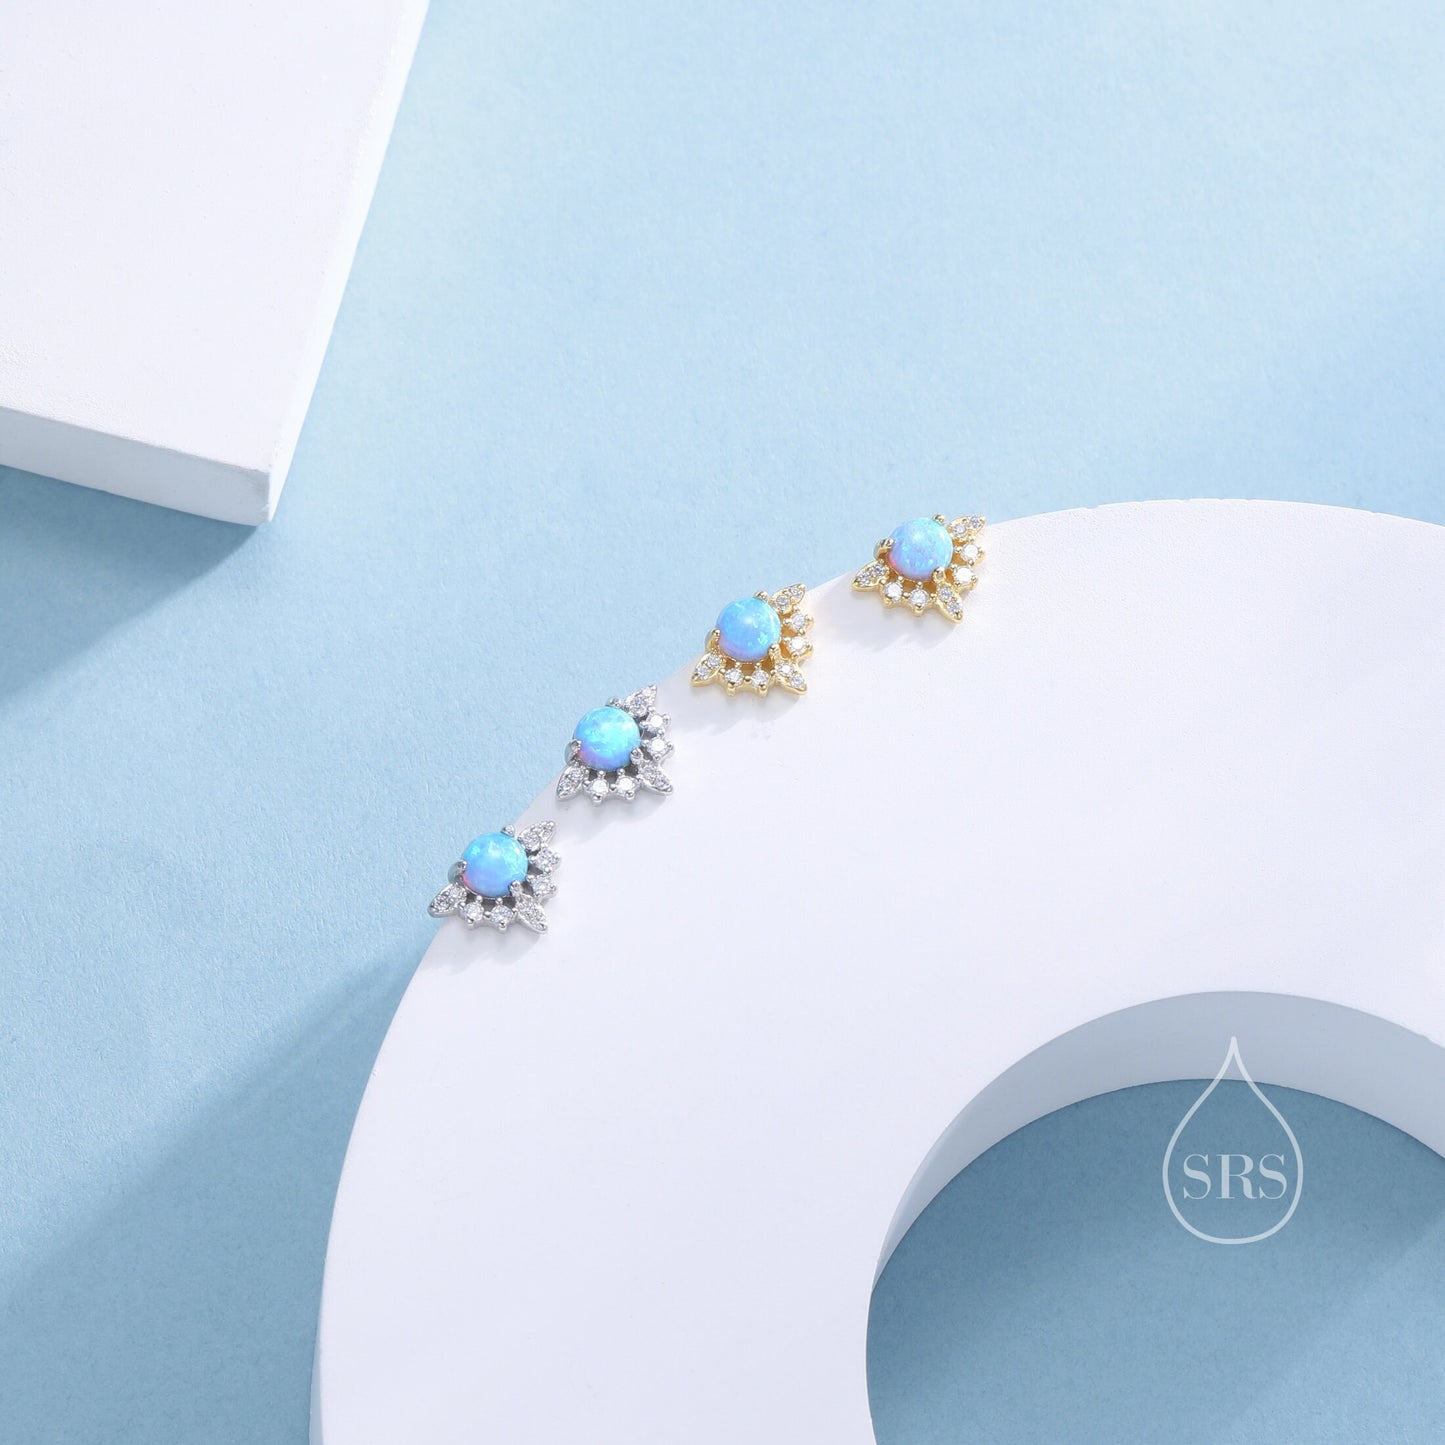 Vintage Inspired Blue Opal Flower CZ Stud Earrings, Lab Opal Halo CZ Earrings, Simulated Opal Earrings